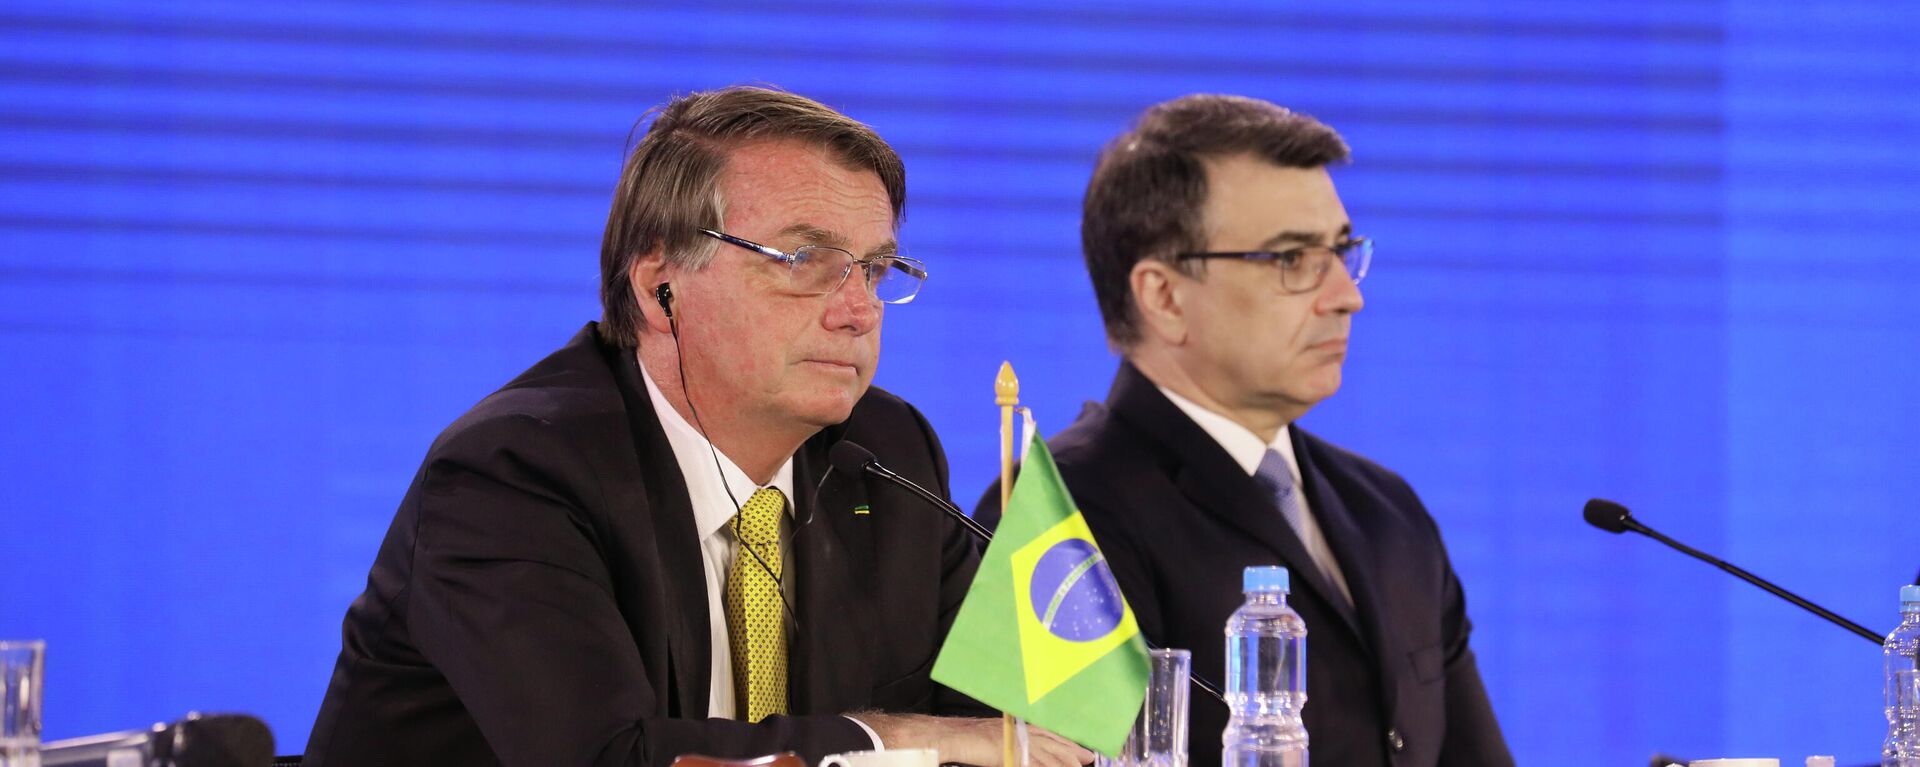 Presidente brasileiro, Jair Bolsonaro (à esquerda), e ministro das Relações Exteriores do Brasil, Carlos França, na LIX Cúpula de Chefes de Estado do Mercosul e Estados Associados, em 17 de dezembro de 2021 (foto de arquivo) - Sputnik Brasil, 1920, 21.07.2022